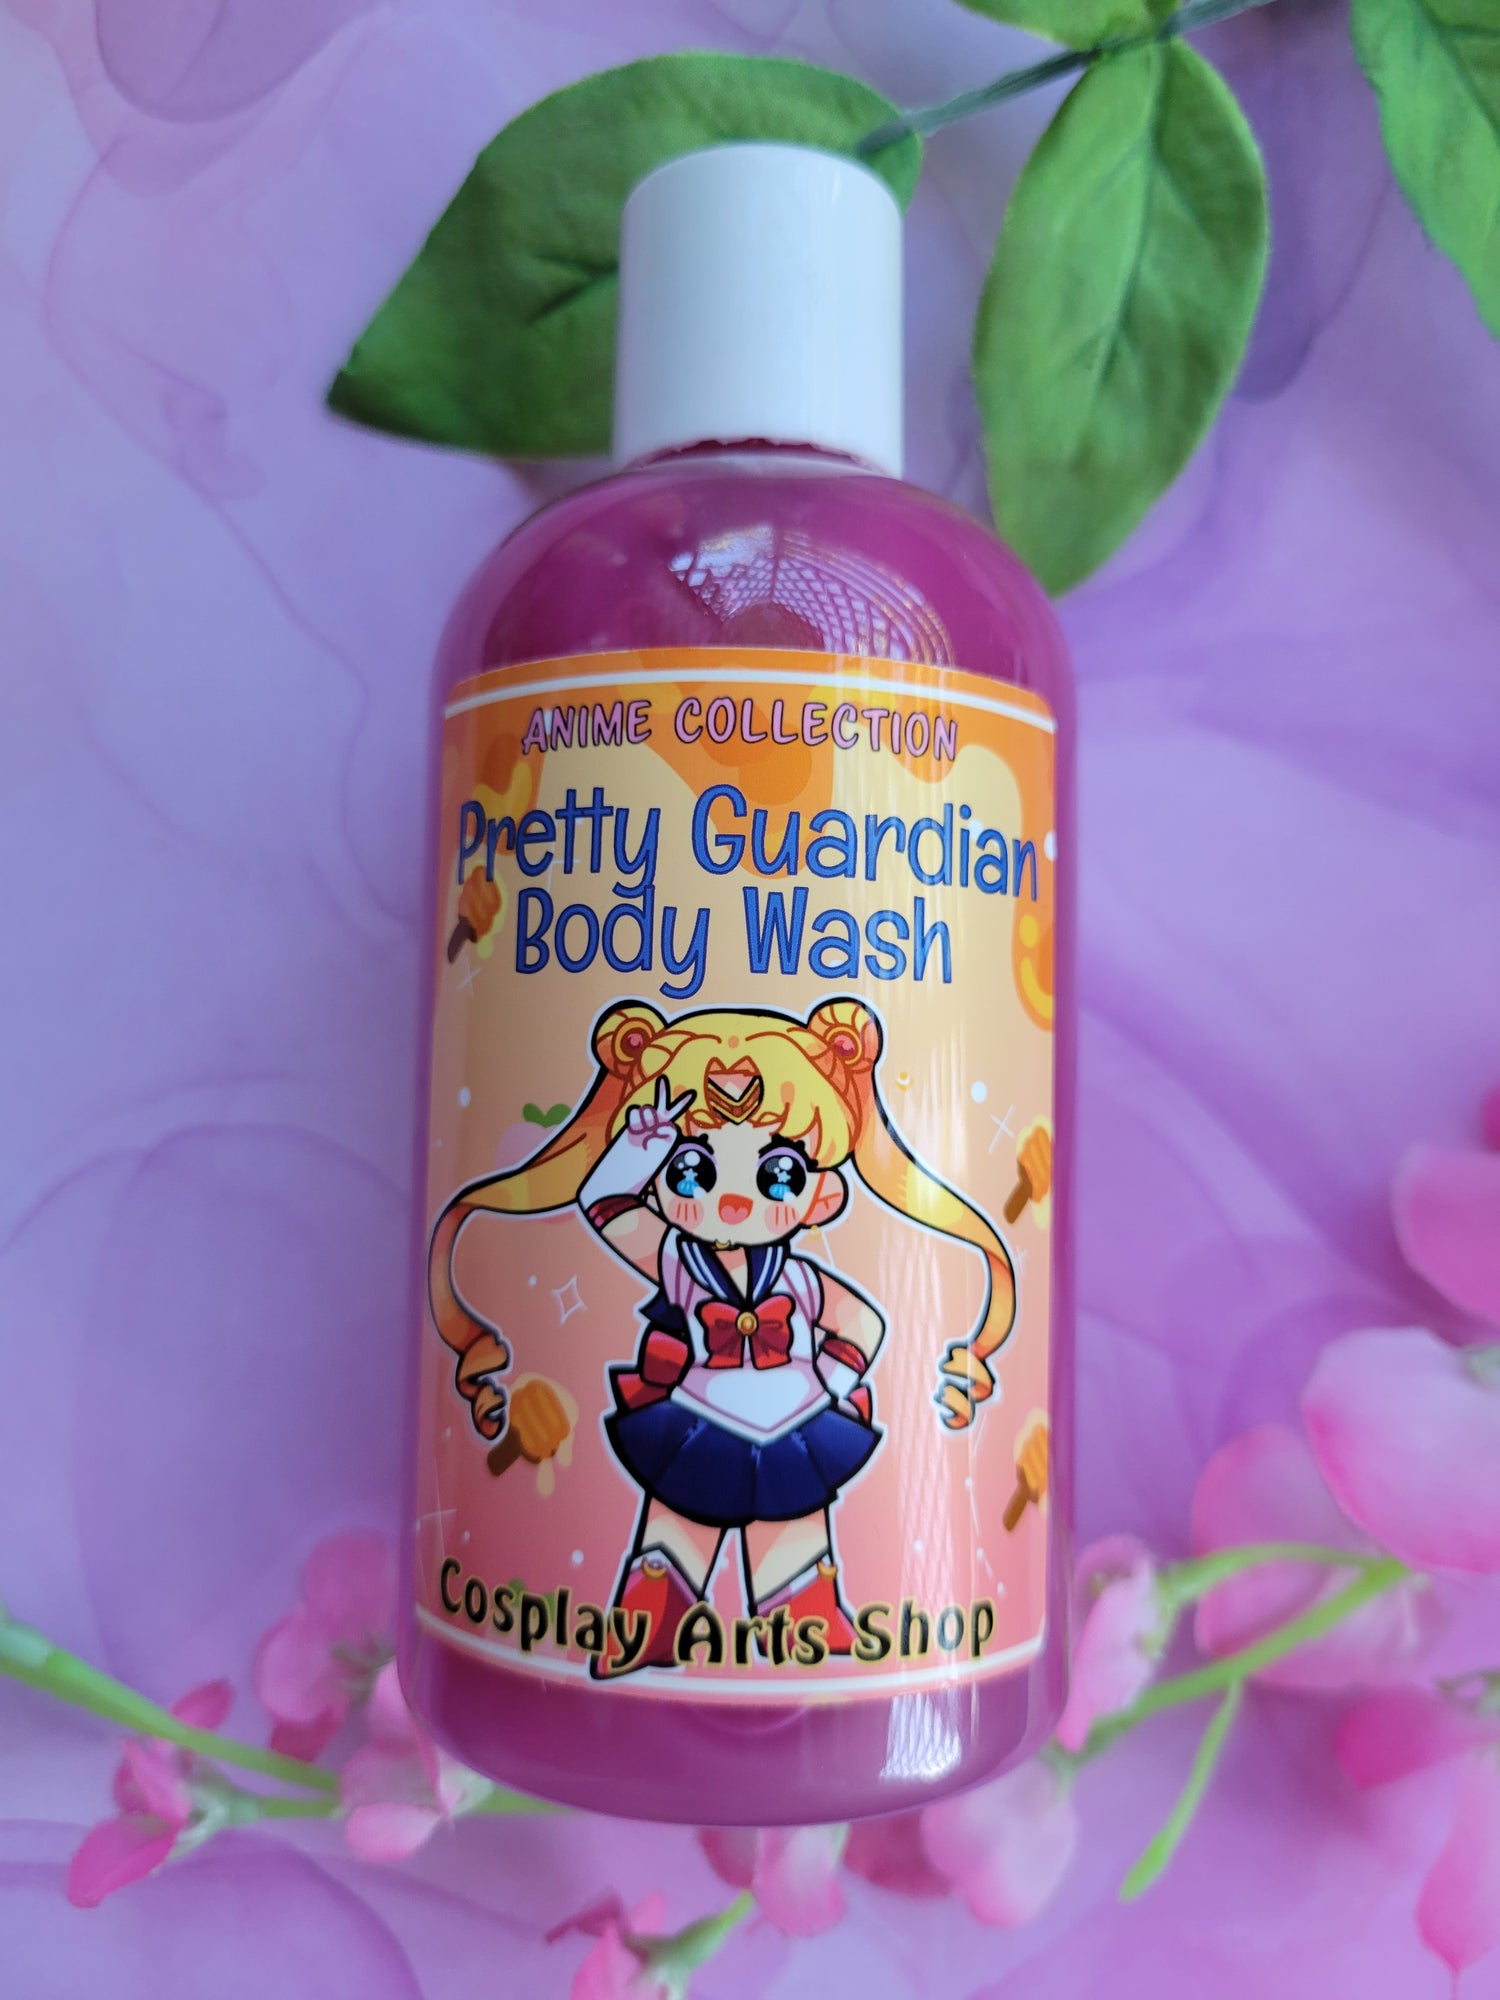 Pretty Guardian Body Wash - Cosplay Arts Shop